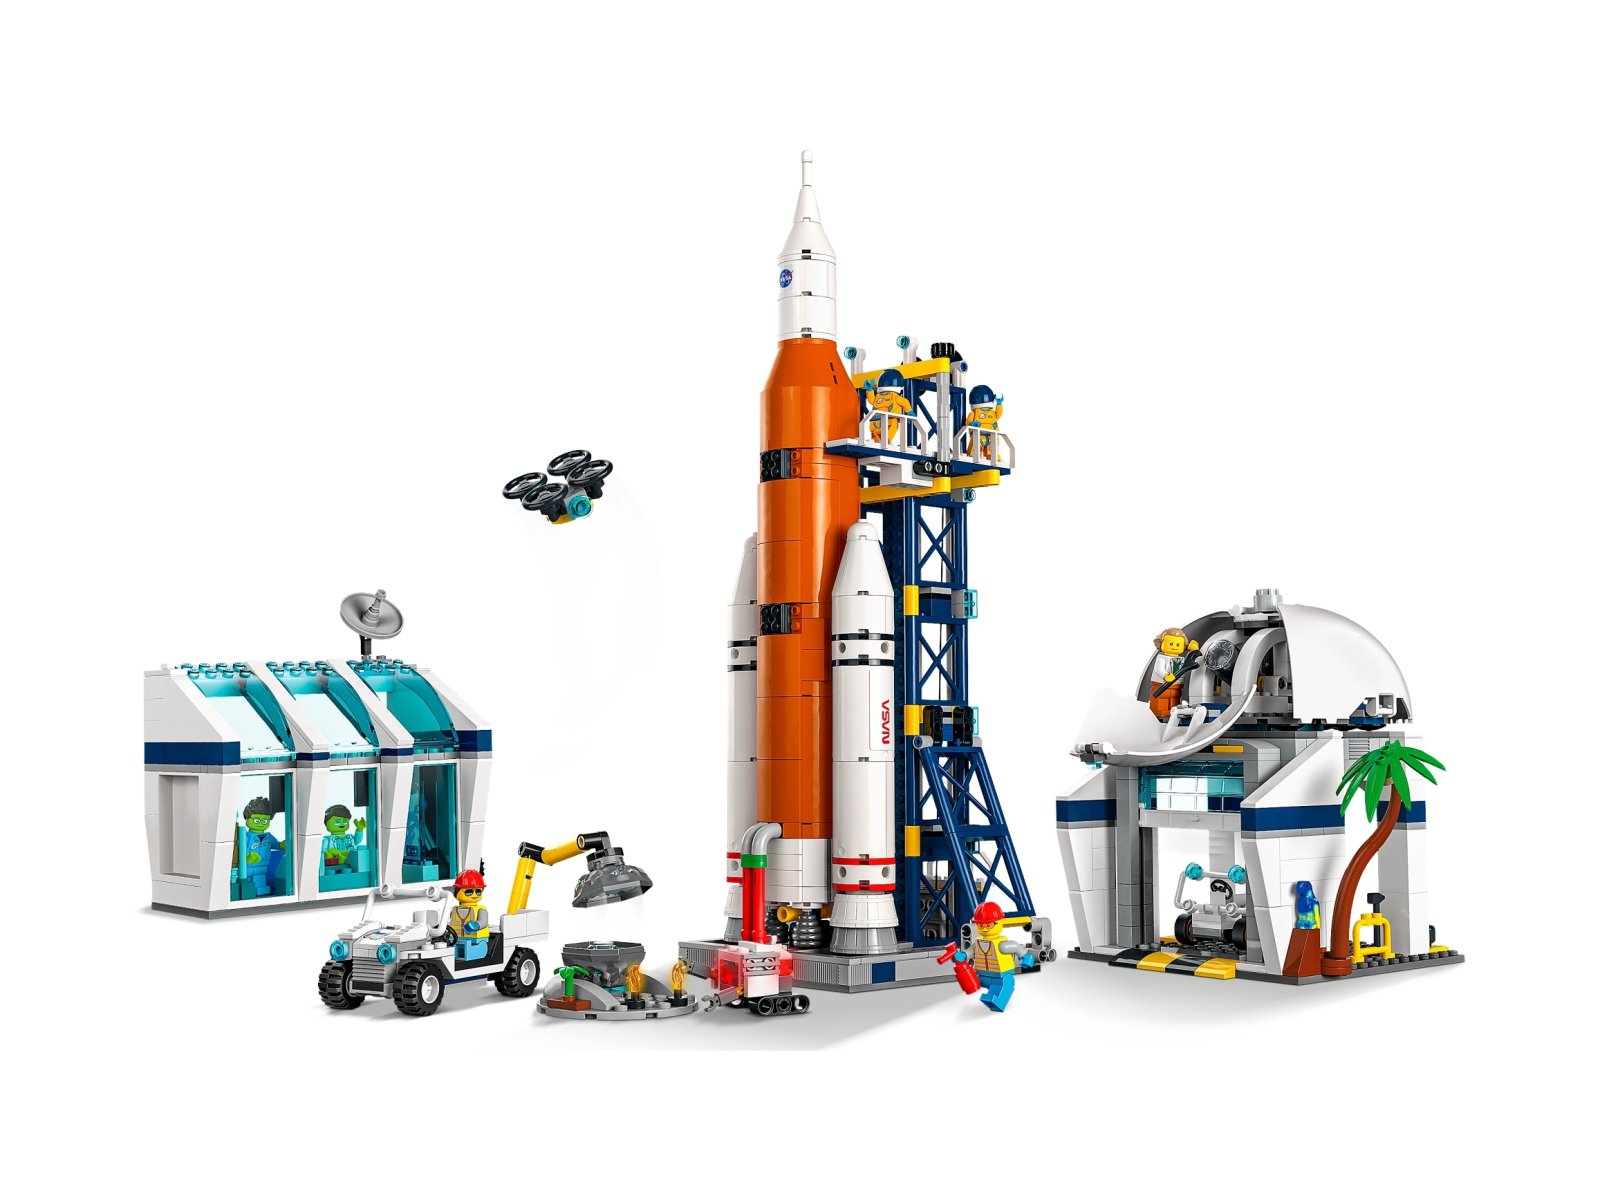 LEGO 60351 Start rakiety z kosmodromu